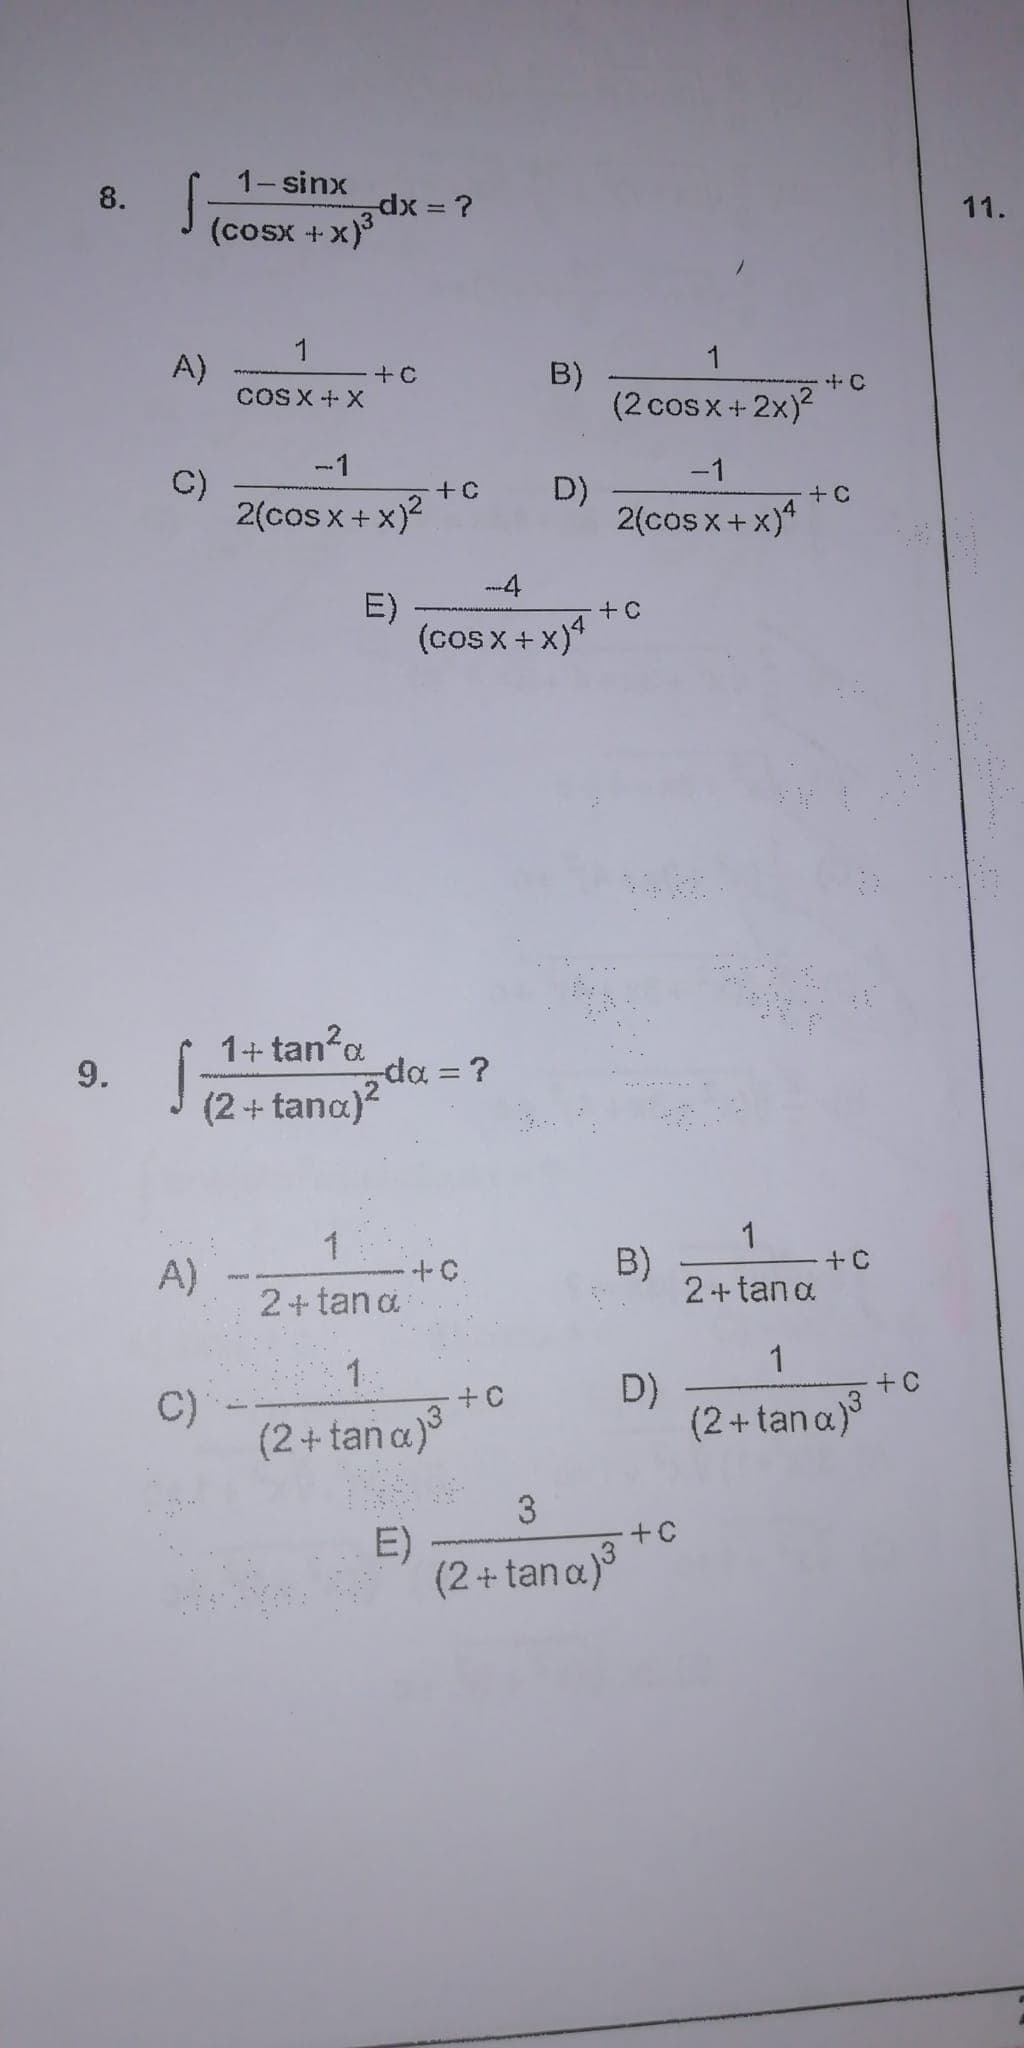 8.
9.
A)
C)
S
1−sinx
A)
C)
dx = ?
(COSX +
1
COSX-X
2(cosx+x)2
E)
-X)³
+ C
1+tan²q
(2 + tana)²
1
2 + tana
1.
(2+tana)³
E)
+C
-4
(cosx+x)4
-da = ?
+C.
B)
+0
D)
1
(2 cos x + 2x)²
-1
2(cosx+x)4
+ C
B)
3
(2+tana)³
D)
+C
+ C
+ C
+C
2+tan a
1
(2+tana)³
+ C
11.